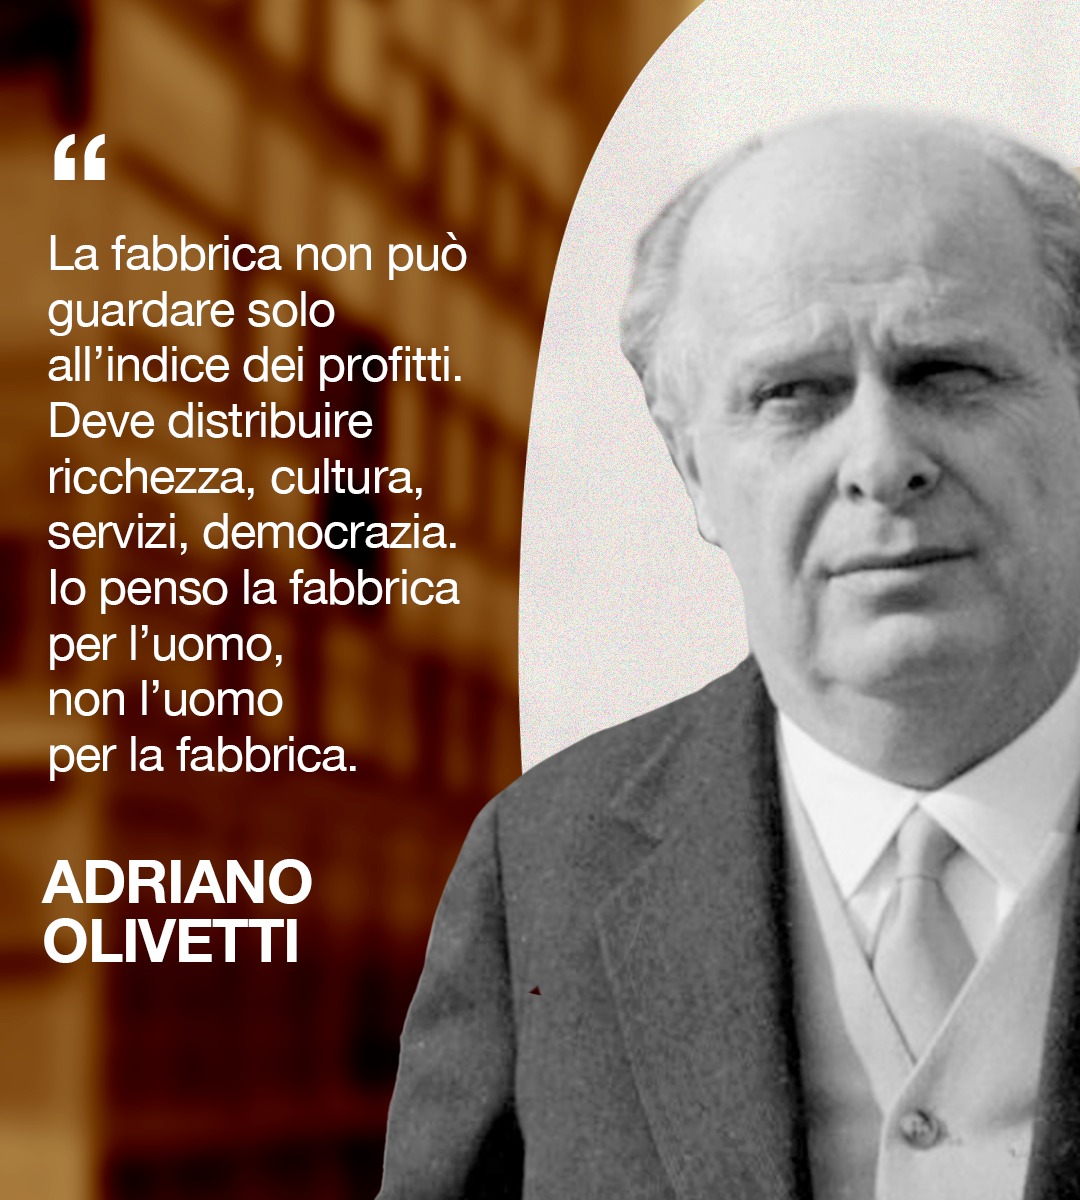 Nel giorno della sua nascita celebriamo Adriano Olivetti, imprenditore visionario che ha lasciato un'impronta indelebile nel mondo dell'industria italiana. Il suo approccio ha rivoluzionato il concetto di lavoro e di produzione, mettendo al centro il benessere dei lavoratori e